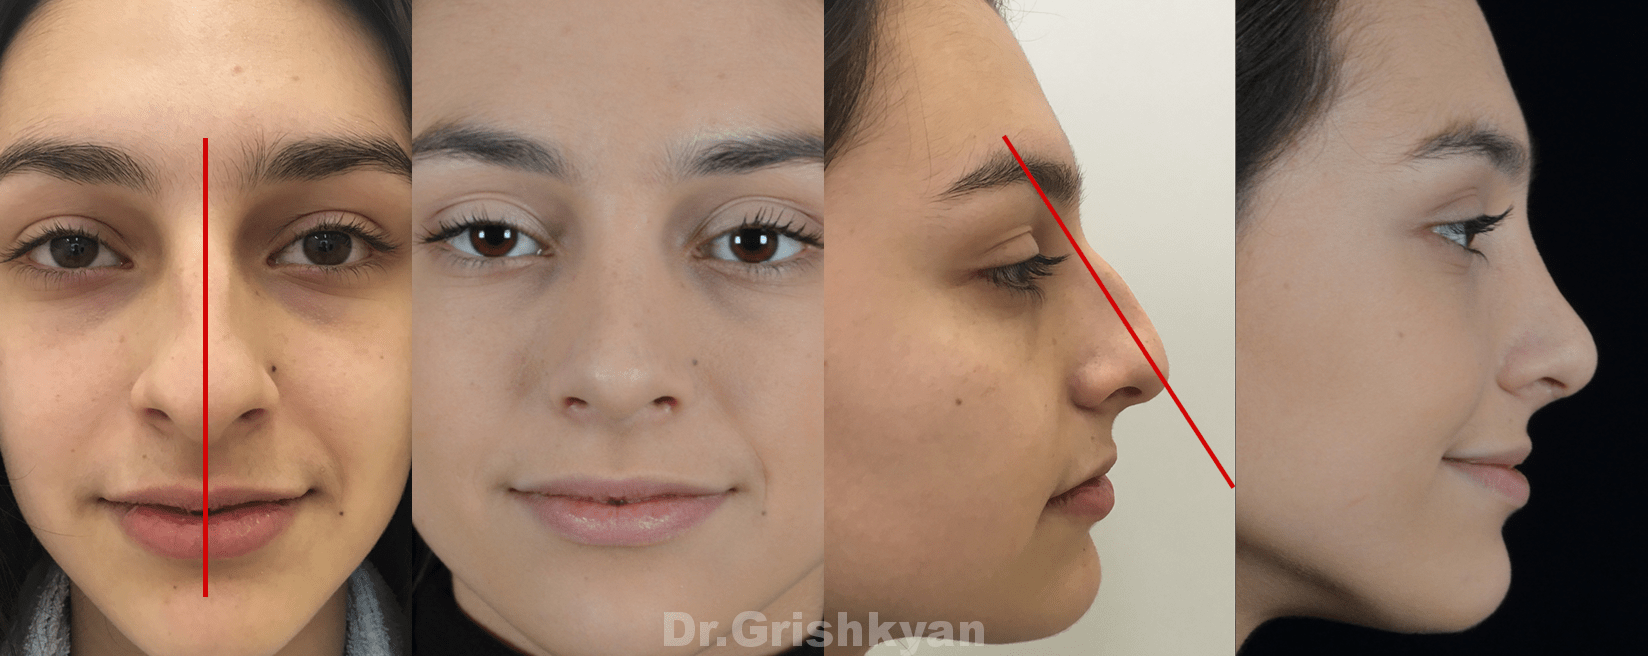 На фотографии можно видеть пациентку до и после пластики спинки носа (удаление горбинки и исправление кривизны спинки носа)